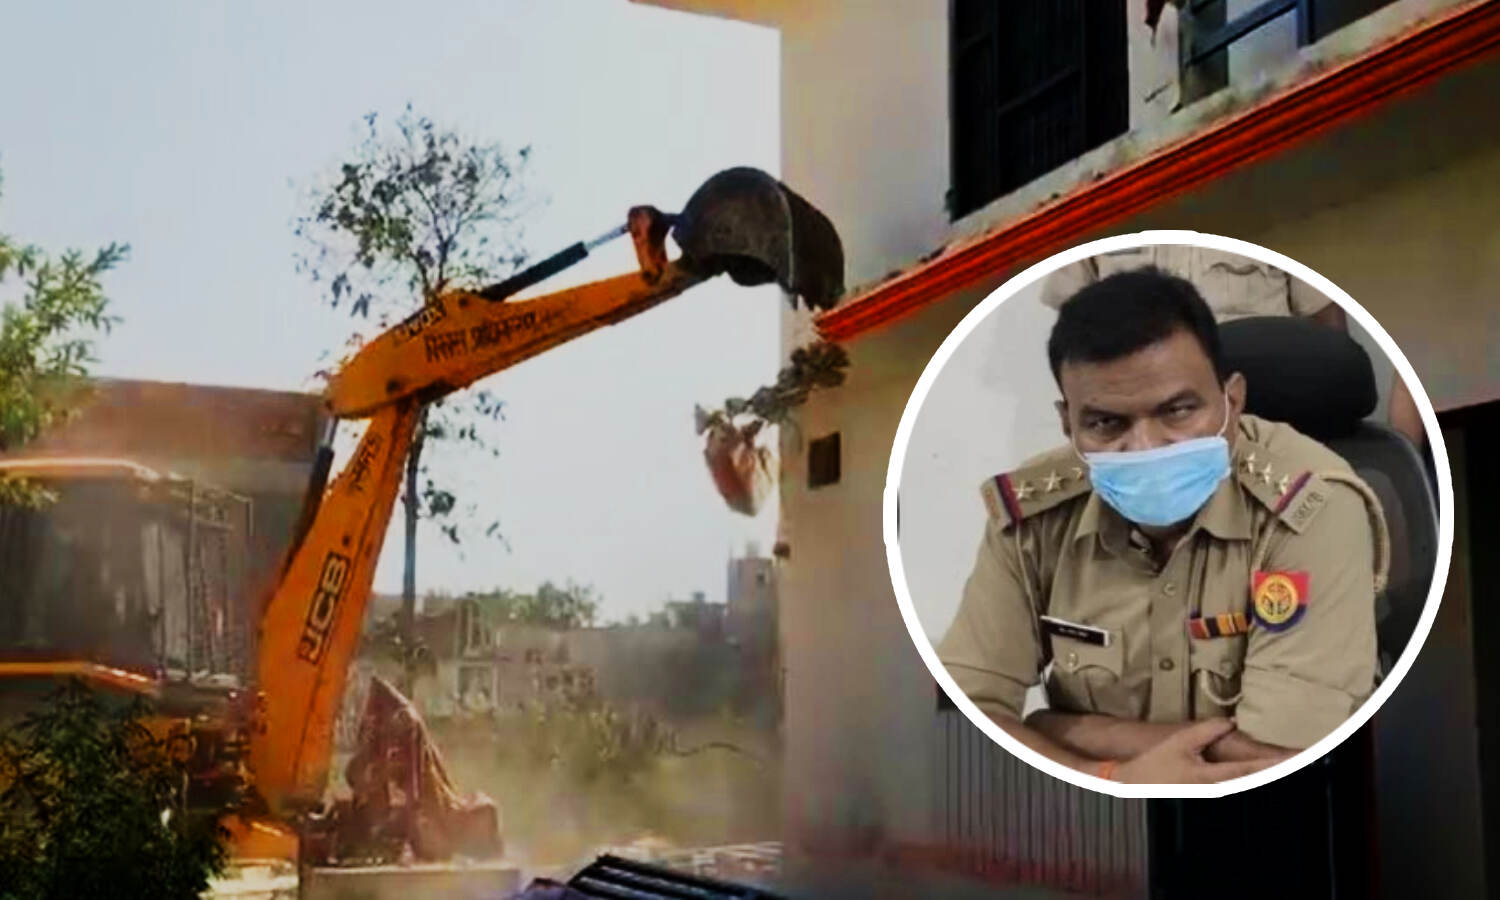 Gorakhpur News : मलबे में तब्दील 1 करोड़ का घर, मनीष गुप्ता हत्याकांड के मुख्यारोपी इंस्पेक्टर के घर पर चला बाबा का बुलडोजर